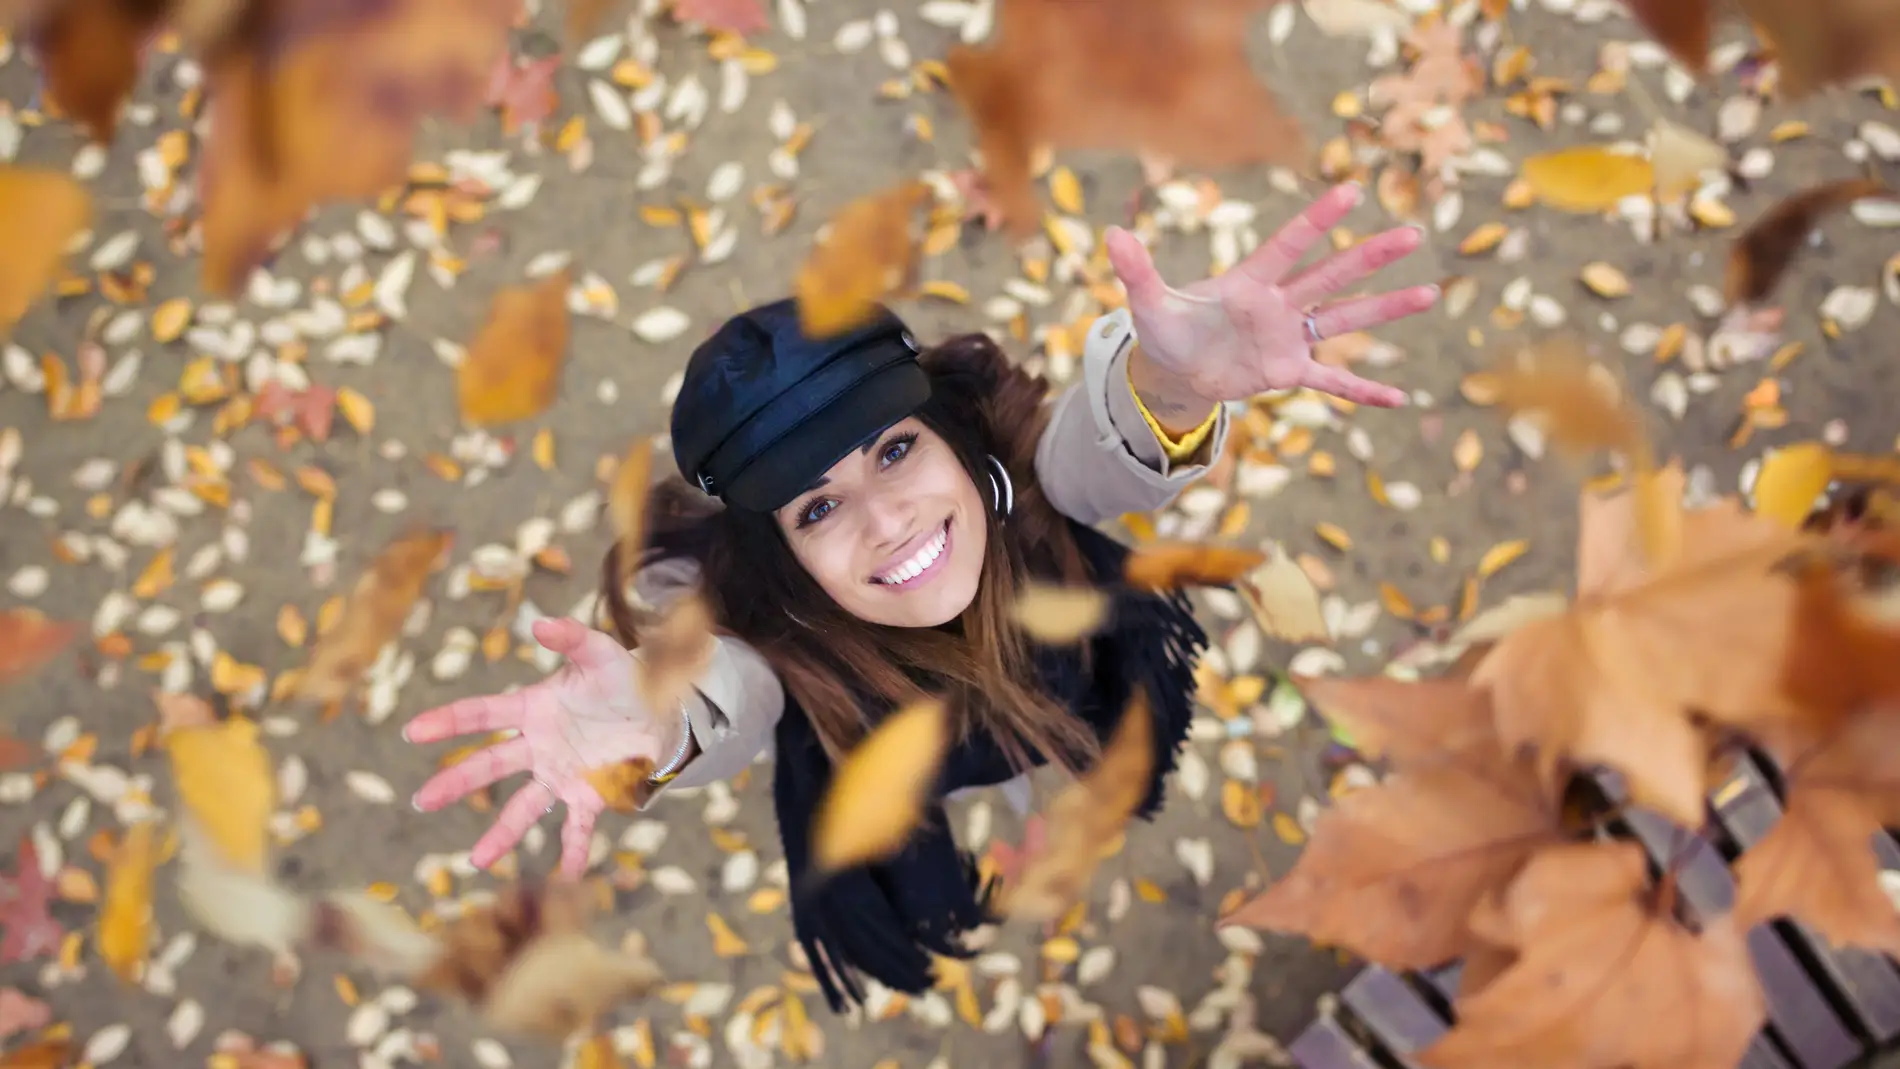 Una chica alegre entre las hojas de otoño.